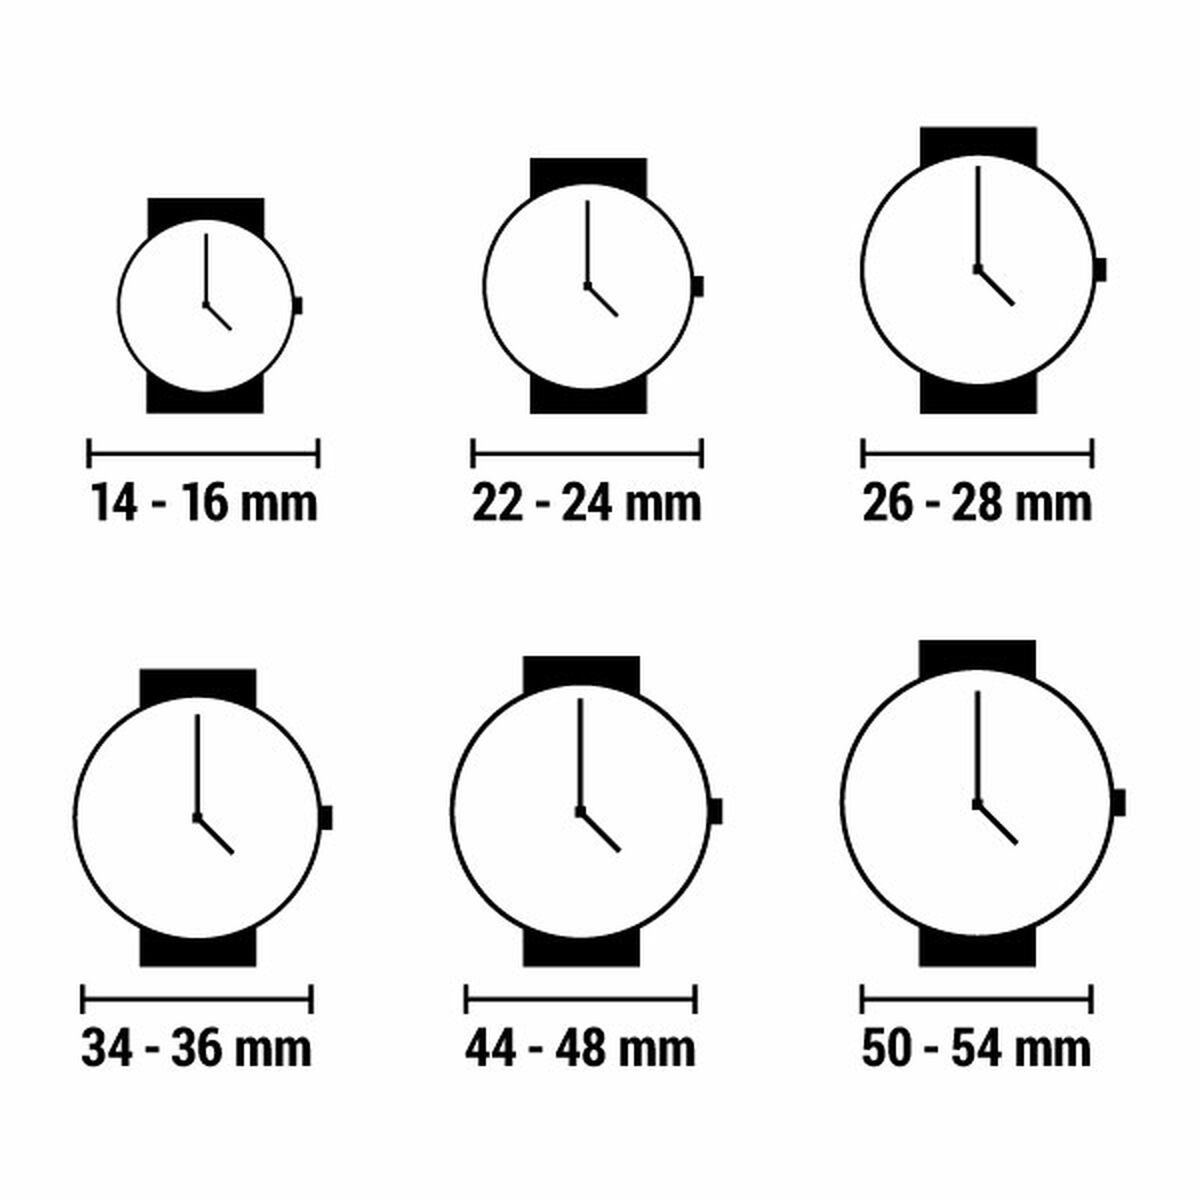 Horloge Dames Time Force TF2649L-01-1 (Ø 25 mm)